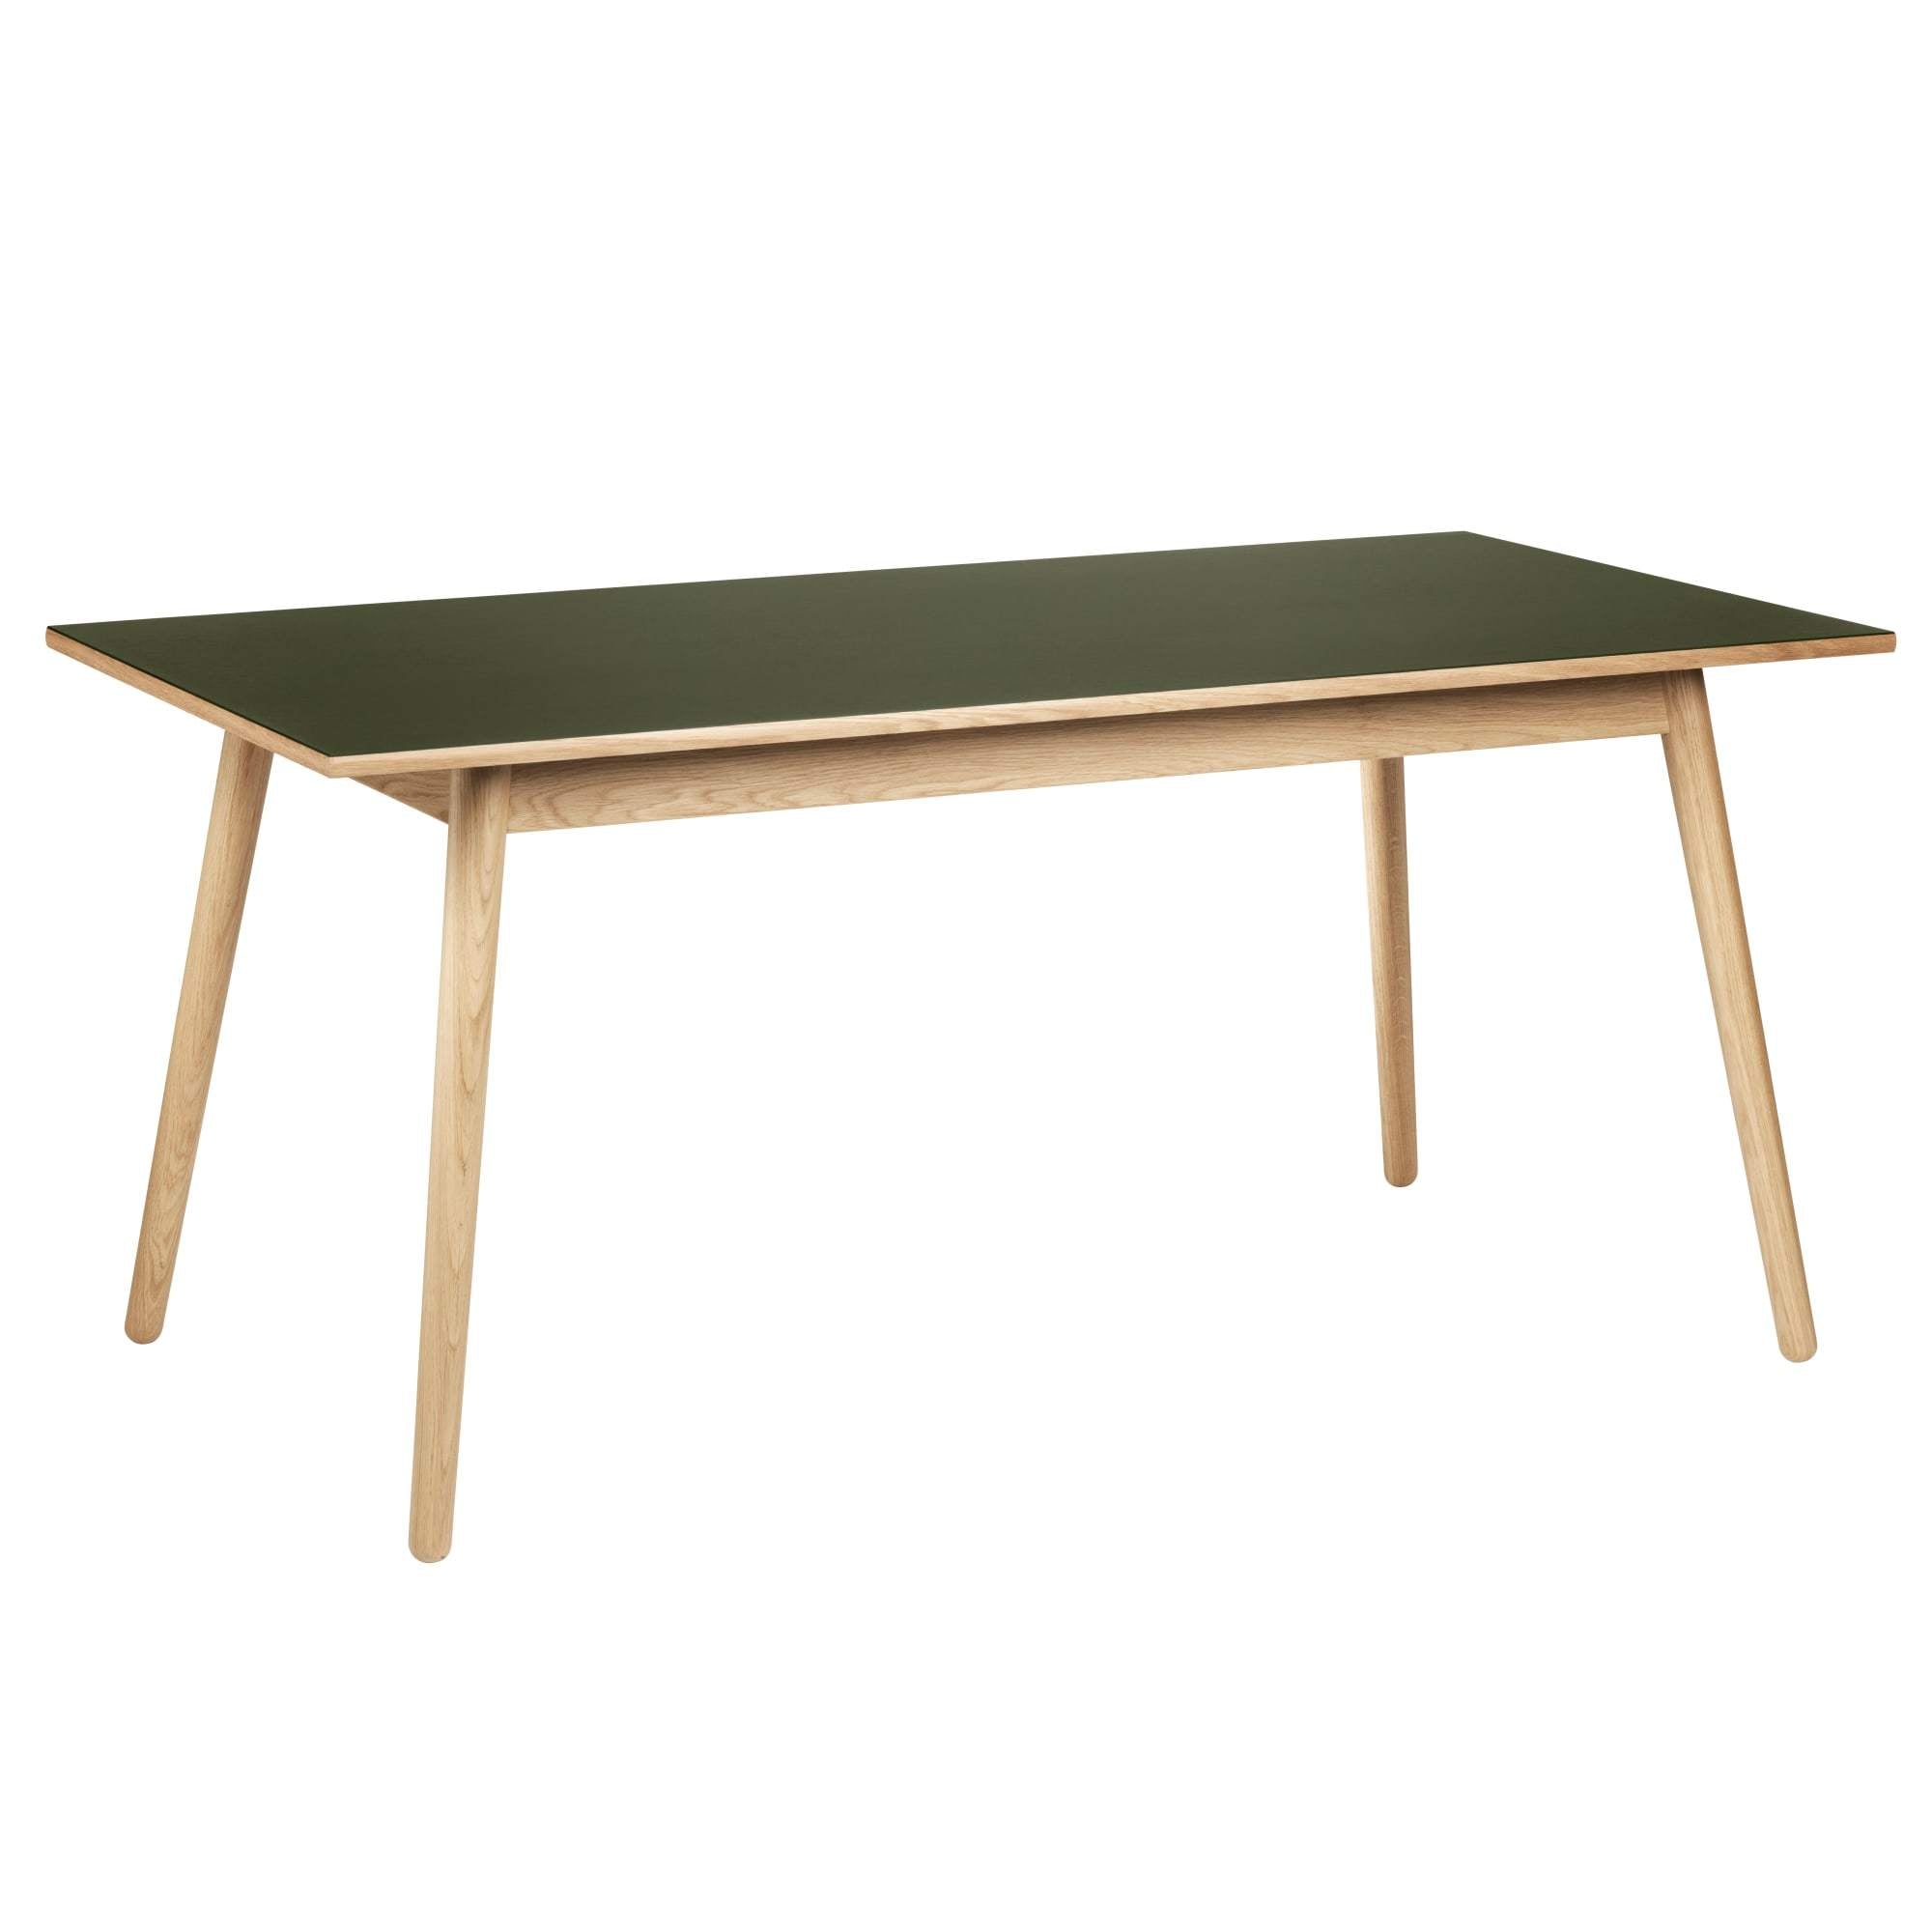 Fdb Møbler C35 B Table à manger Chêne, Linoléum Olives, 160 cm